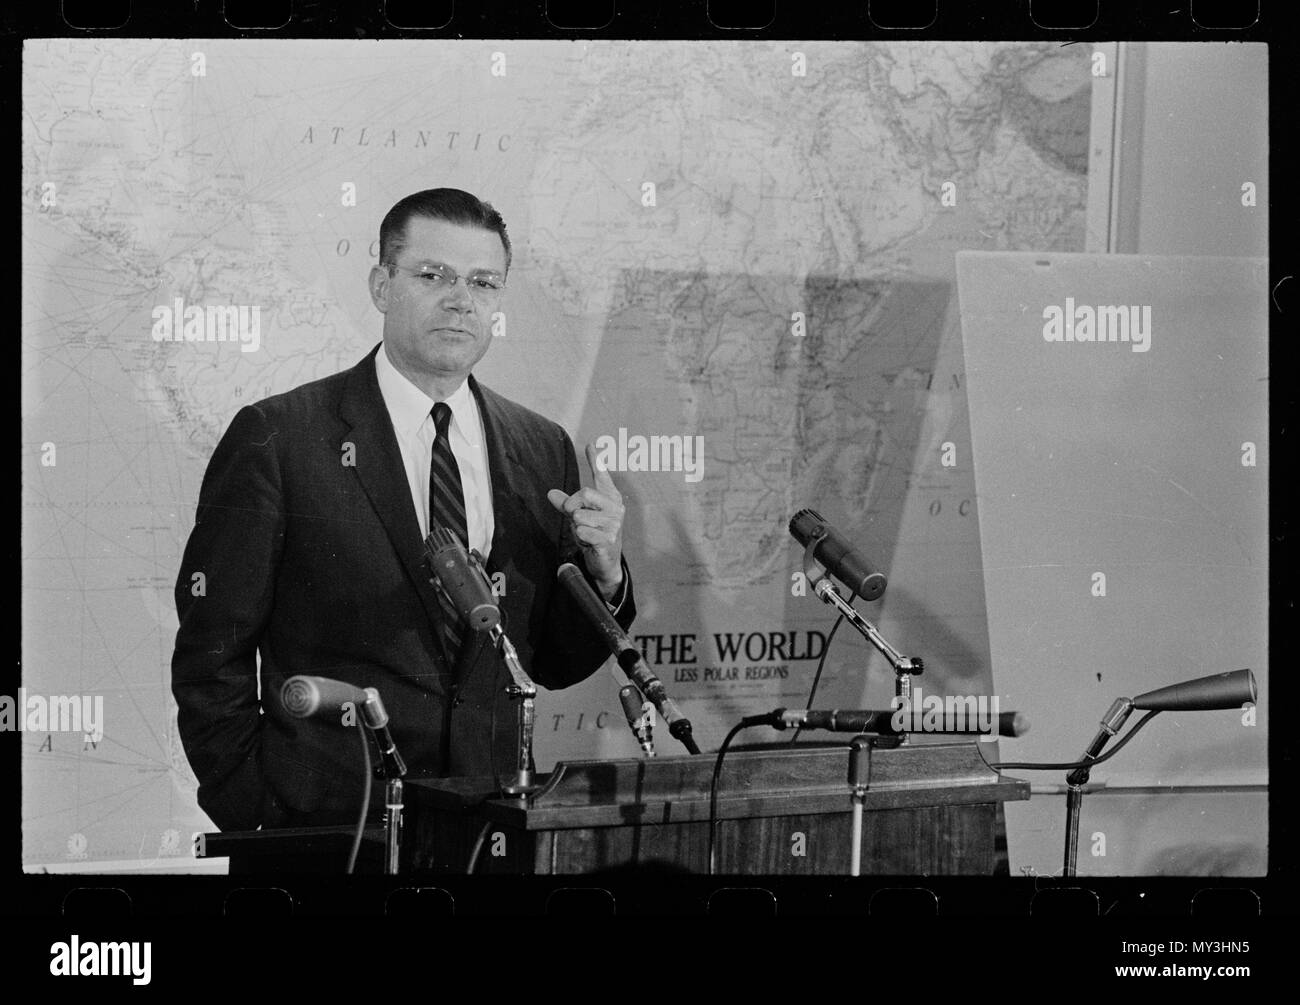 Il Segretario della Difesa Robert McNamara risponde alle domande sulla situazione cubana in occasione di una conferenza stampa, Washington DC, 10/23/1962. Foto di Marion S. Trikosko. Foto Stock